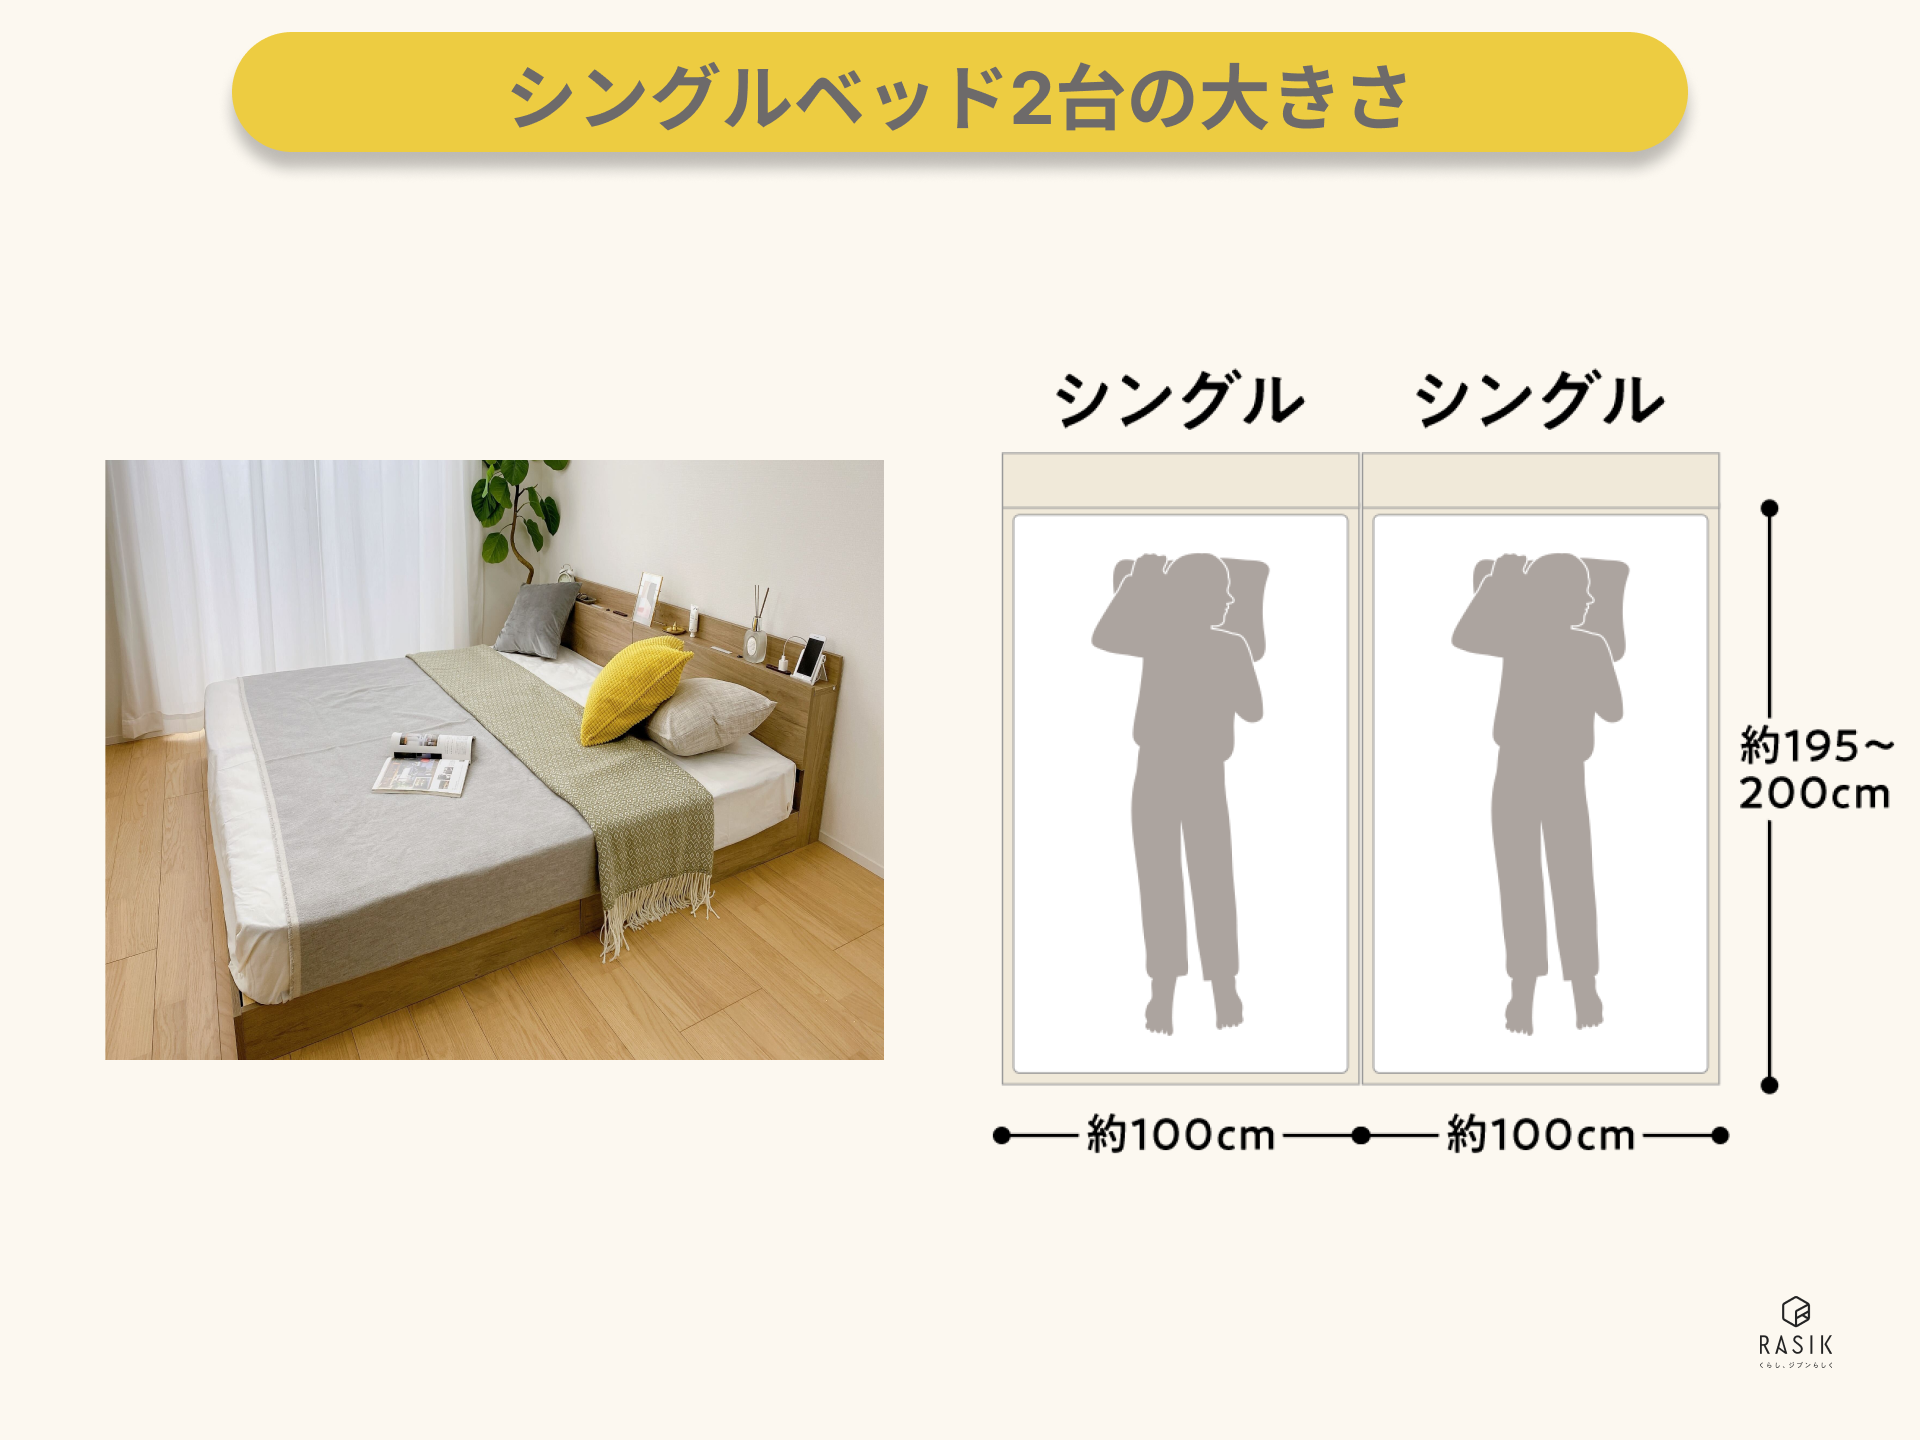 シングルベッド2つ並べた例